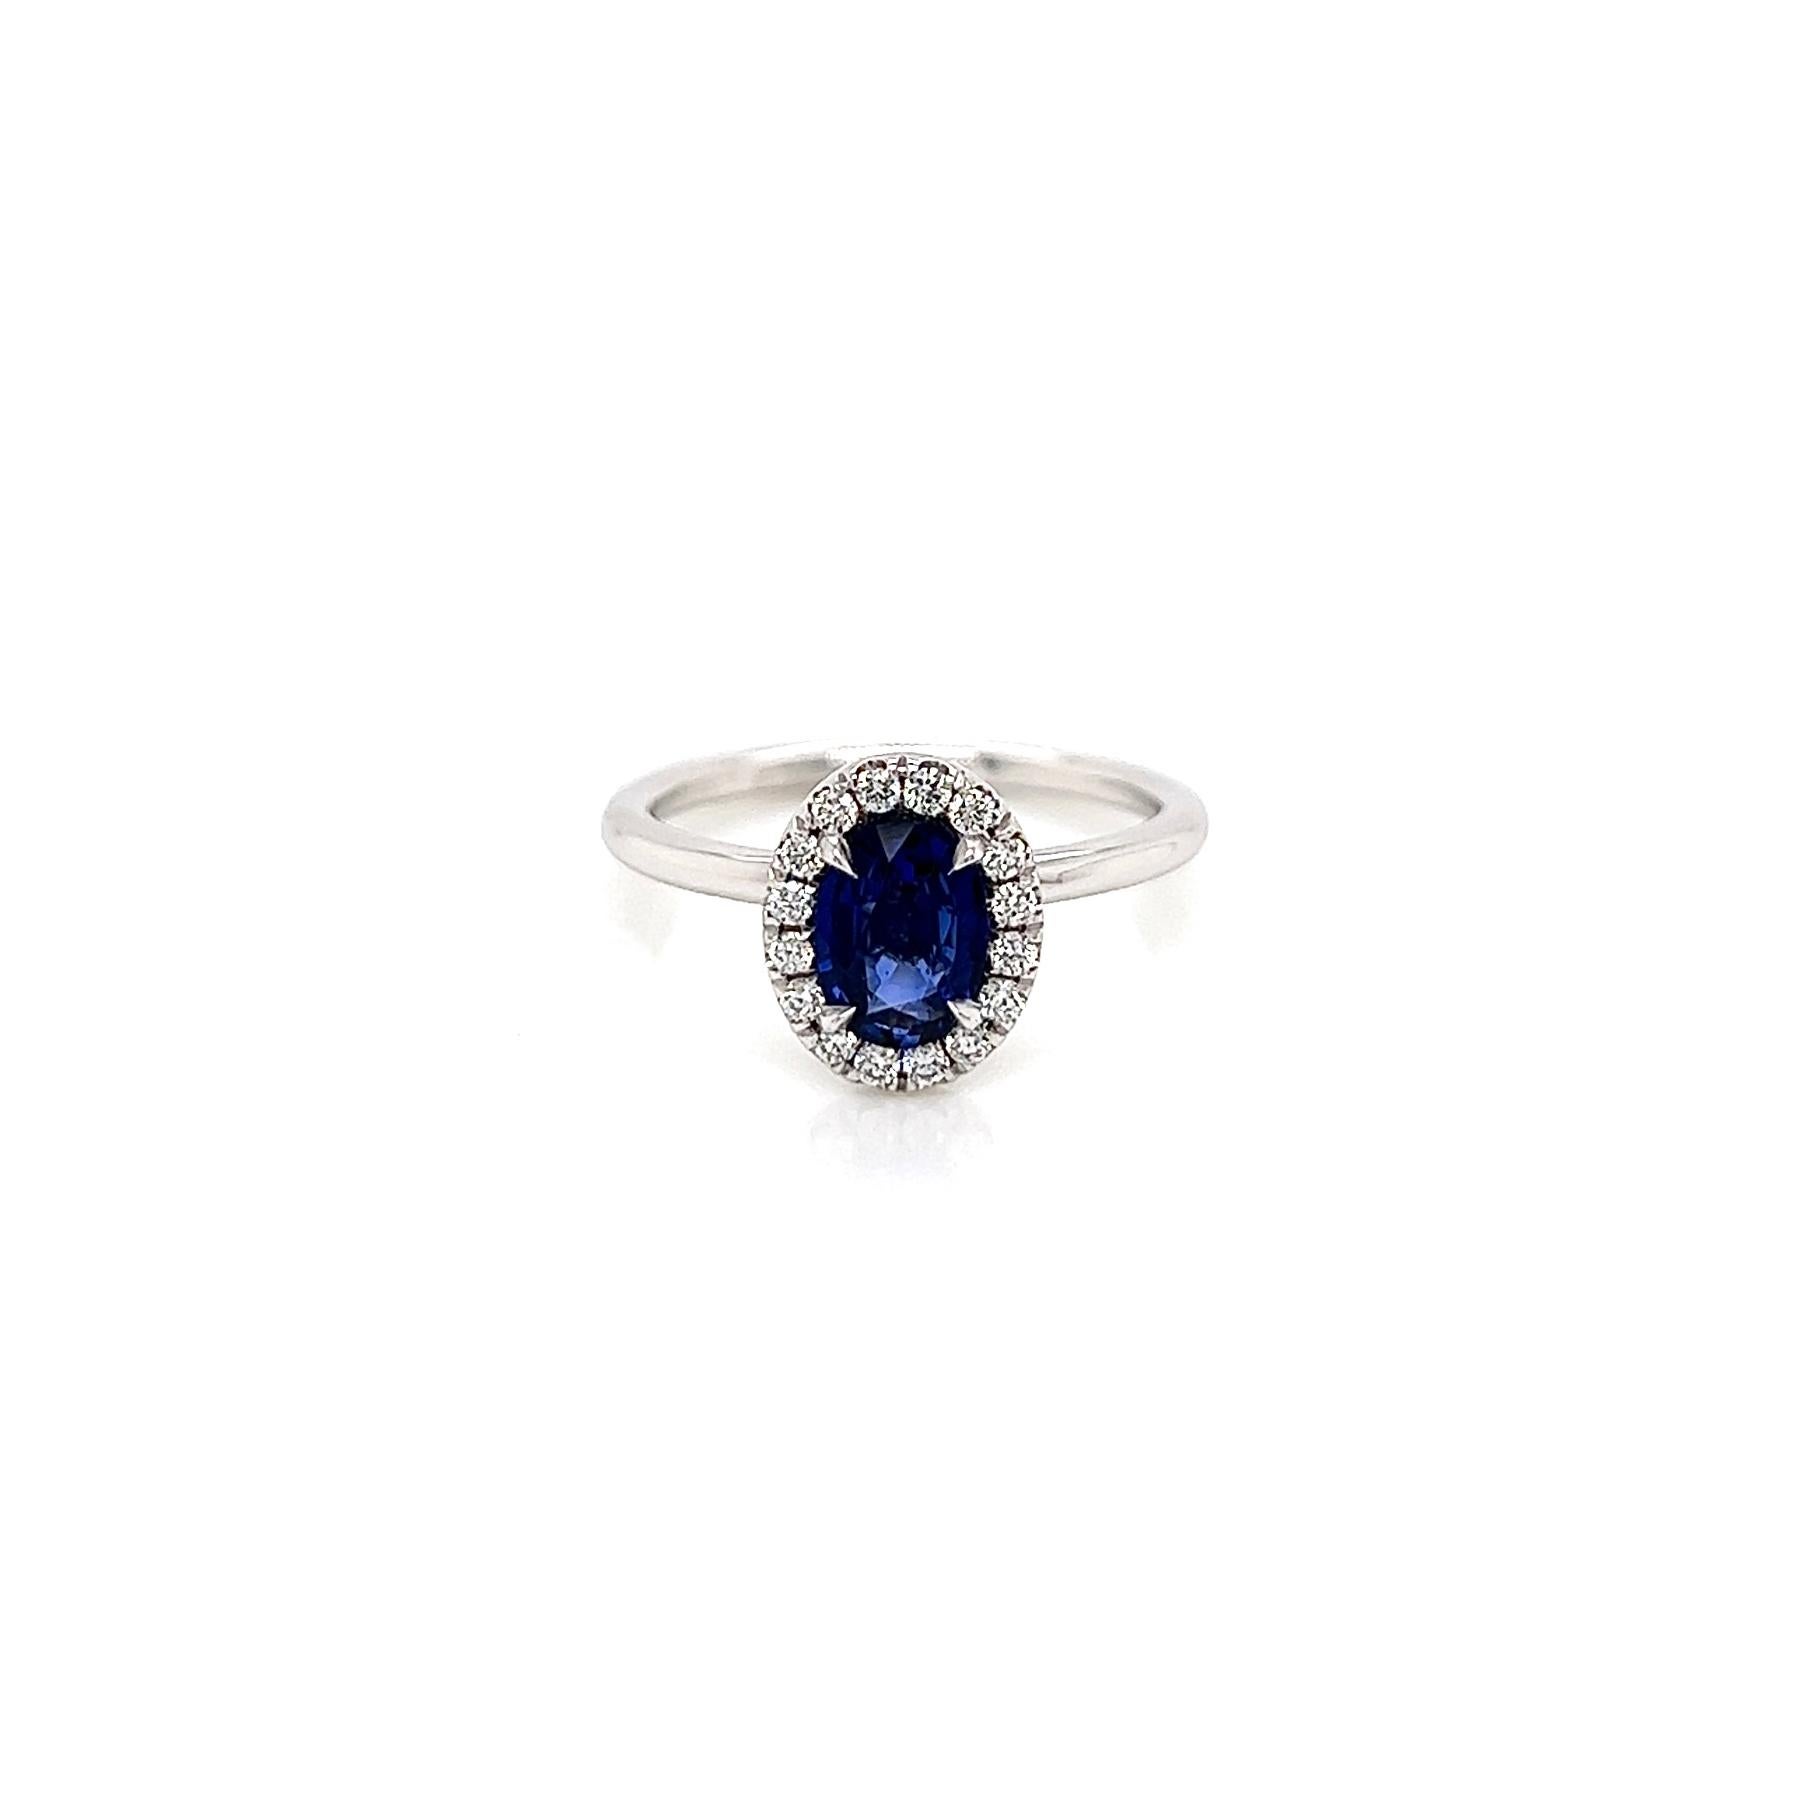 1.14 Total Karat Saphir Diamant Damen Halo Ring

-Metall Typ: 18K Weißgold
-0,90 Karat Blauer Saphir im Ovalschliff
-0,24 Karat runde seitliche Diamanten 
-Größe 6.0

Hergestellt in New York City.